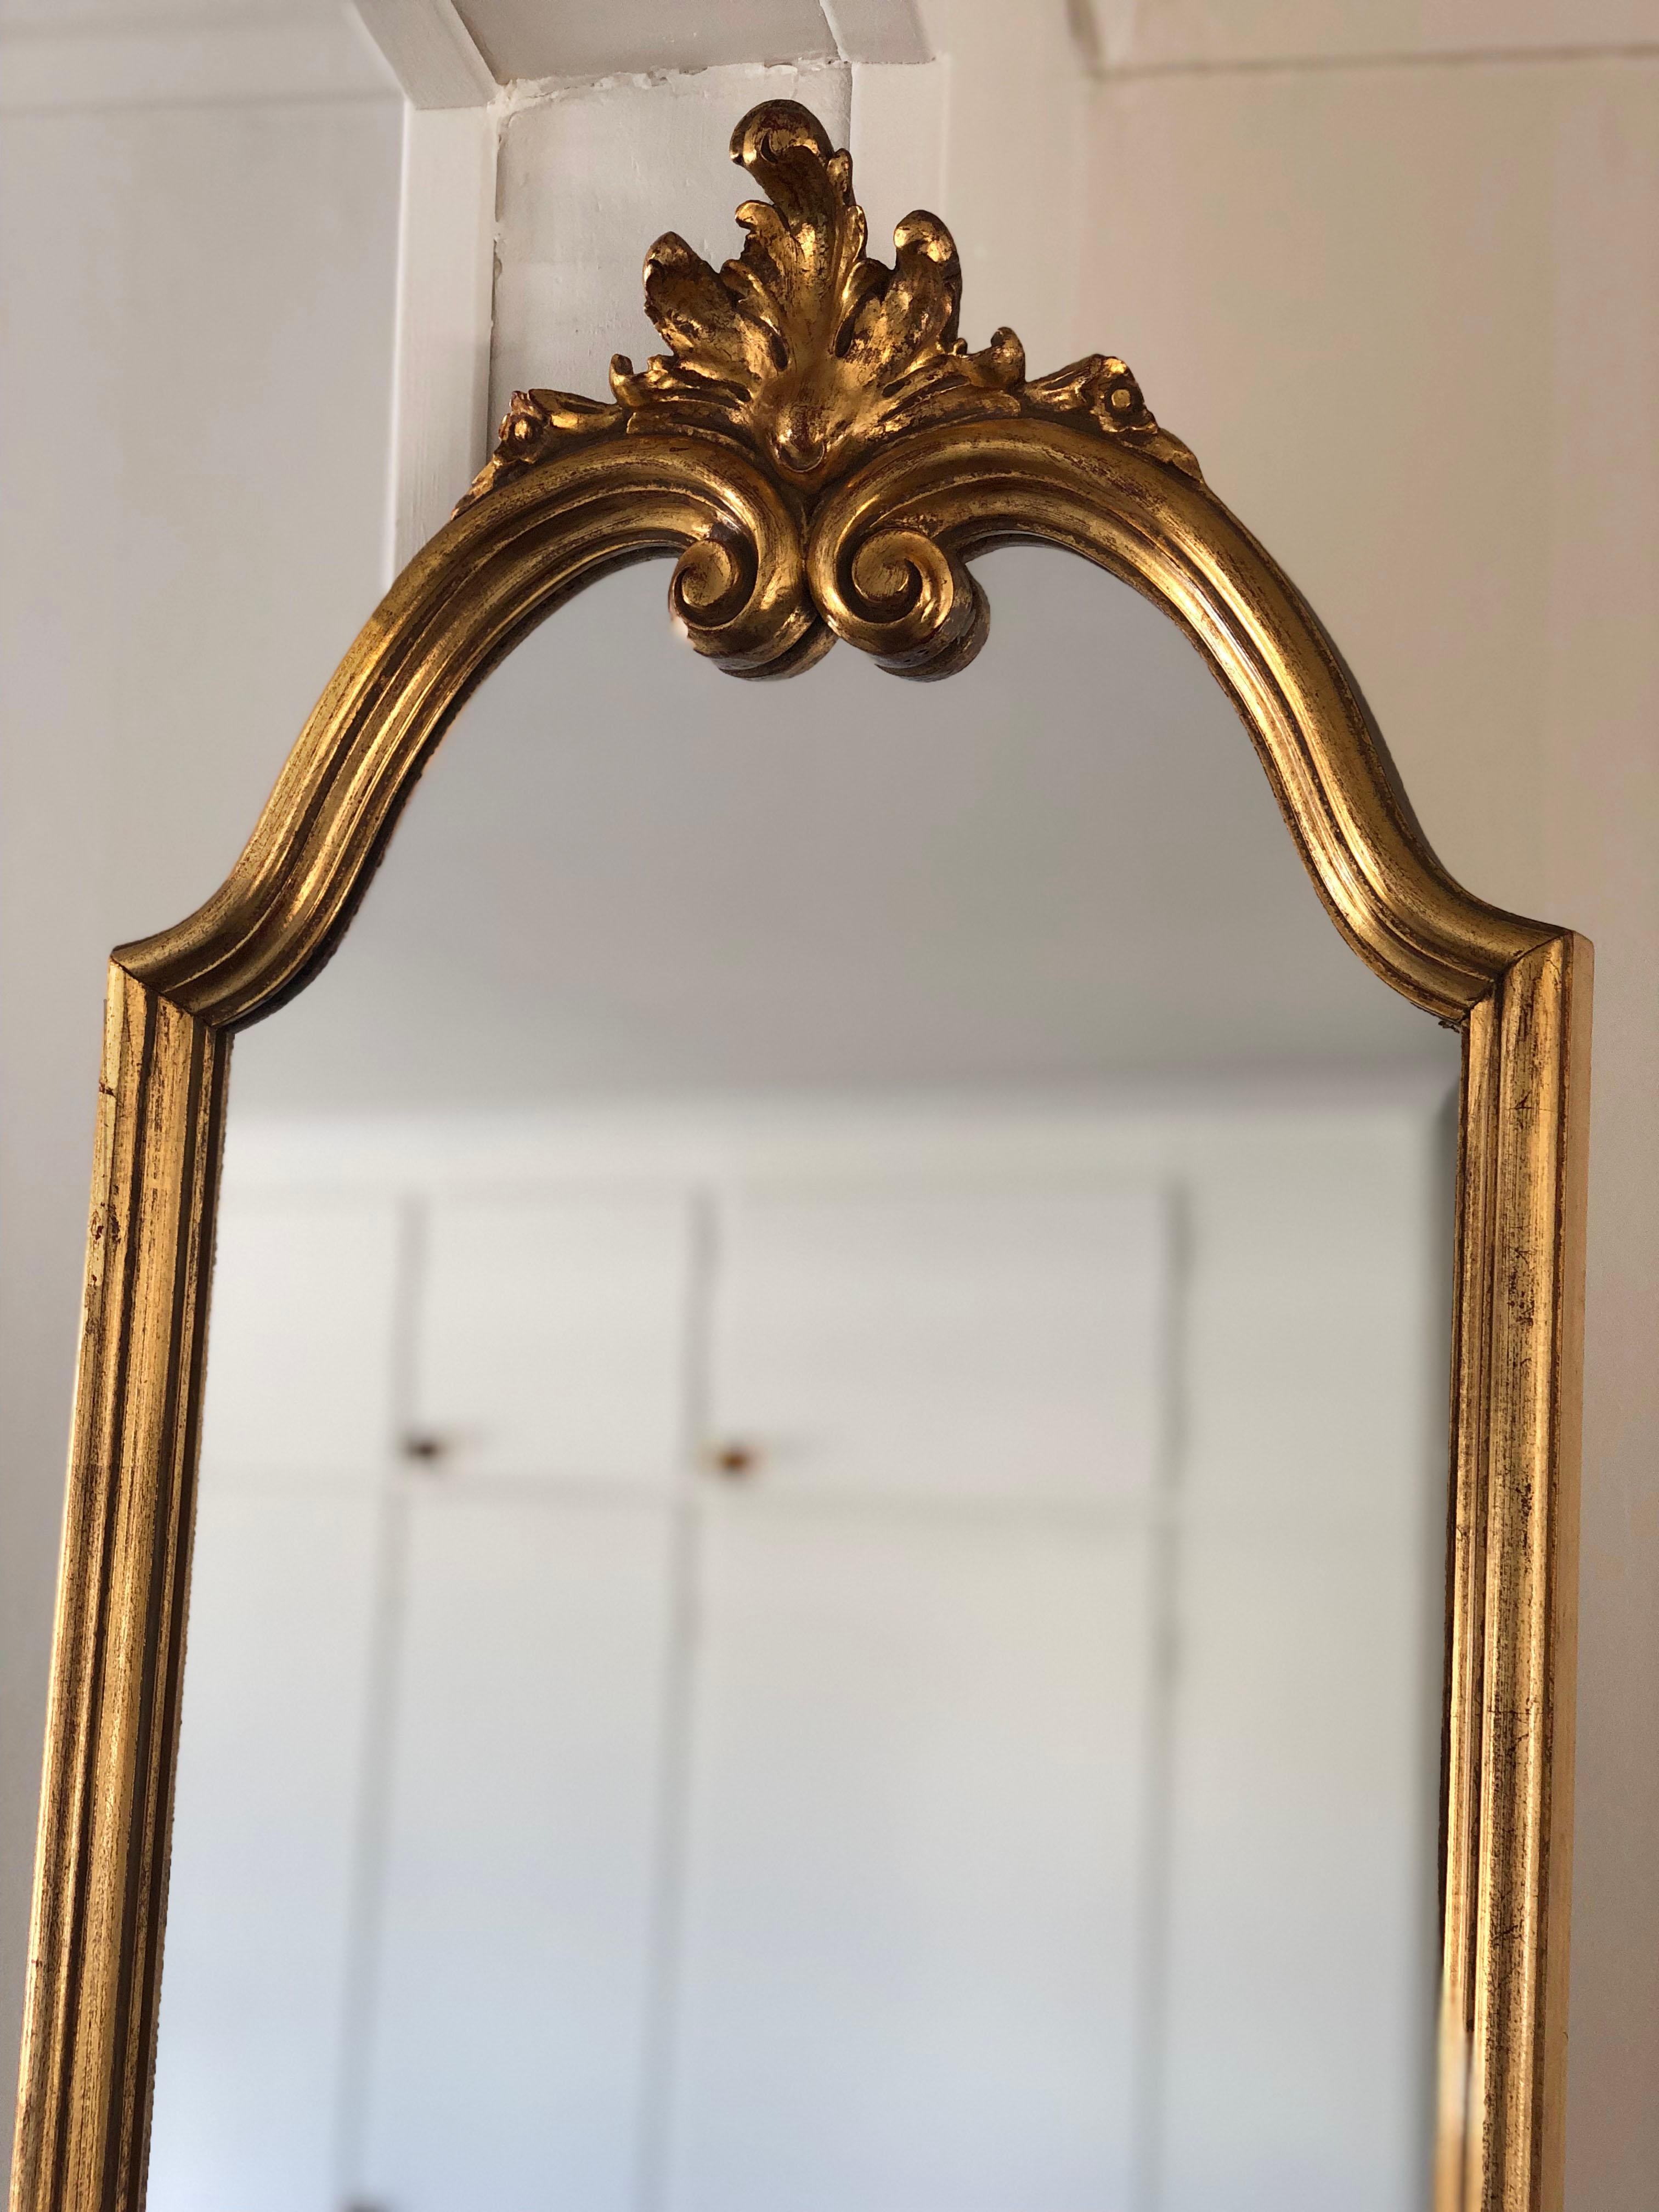 Magnifique miroir vintage en or de Deknudt (Belgique). De petits miroirs coupés sont placés dans le cadre doré. Deknudt est connu pour ses miroirs de qualité des années 70/80.

Objet : Miroir
Concepteur : Deknudt
Style : Vintage, Hollywood